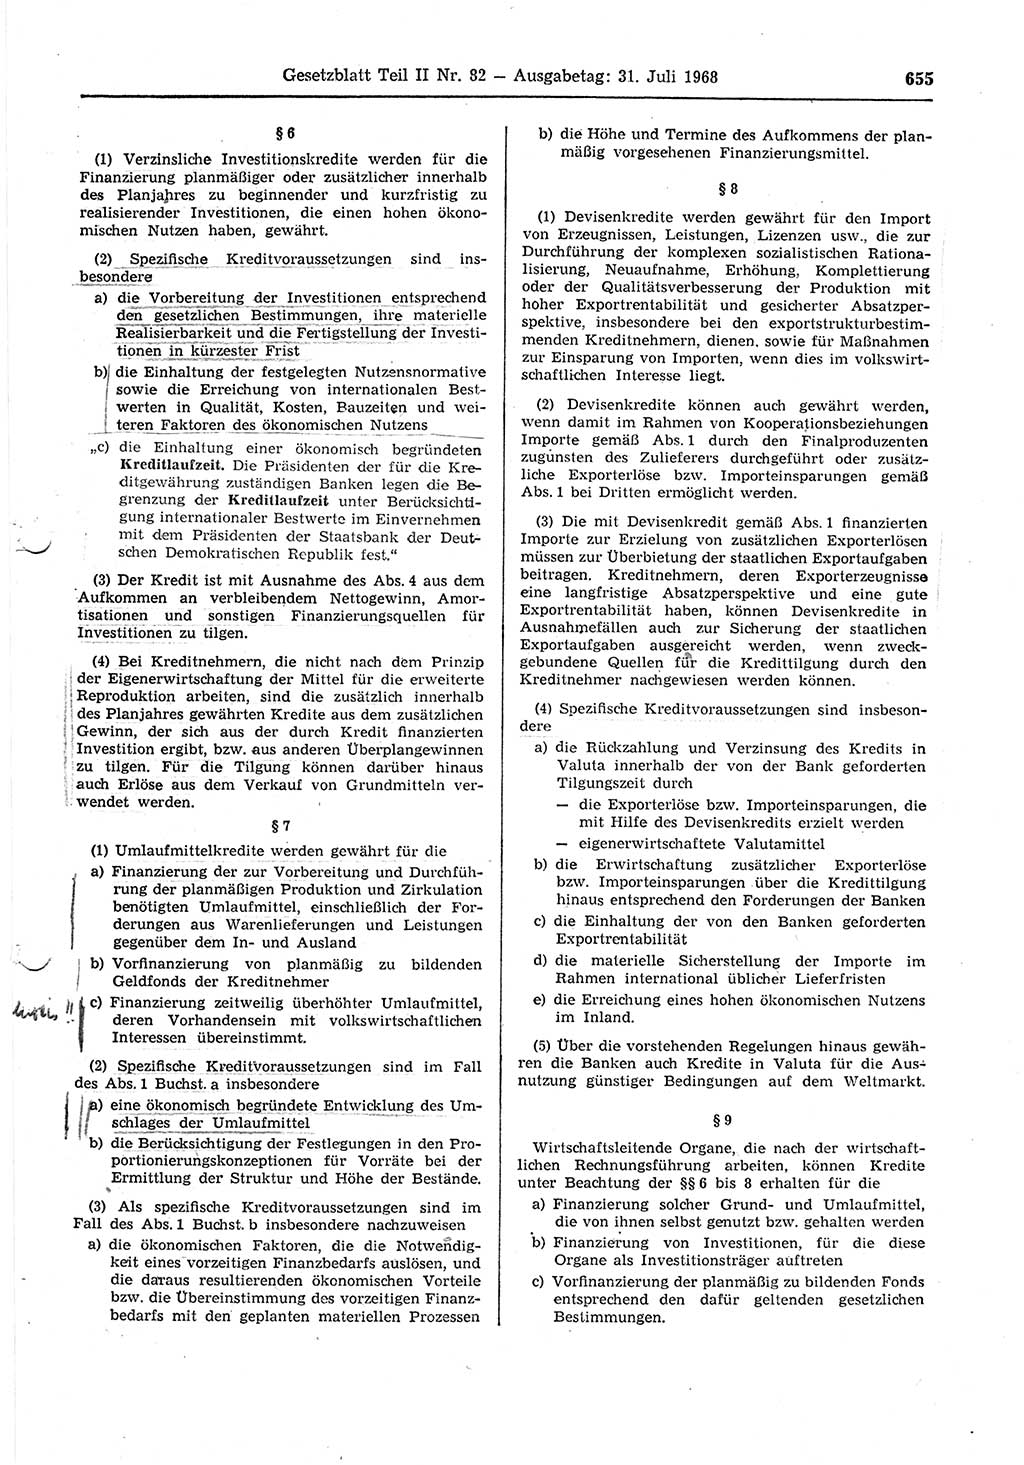 Gesetzblatt (GBl.) der Deutschen Demokratischen Republik (DDR) Teil ⅠⅠ 1968, Seite 655 (GBl. DDR ⅠⅠ 1968, S. 655)